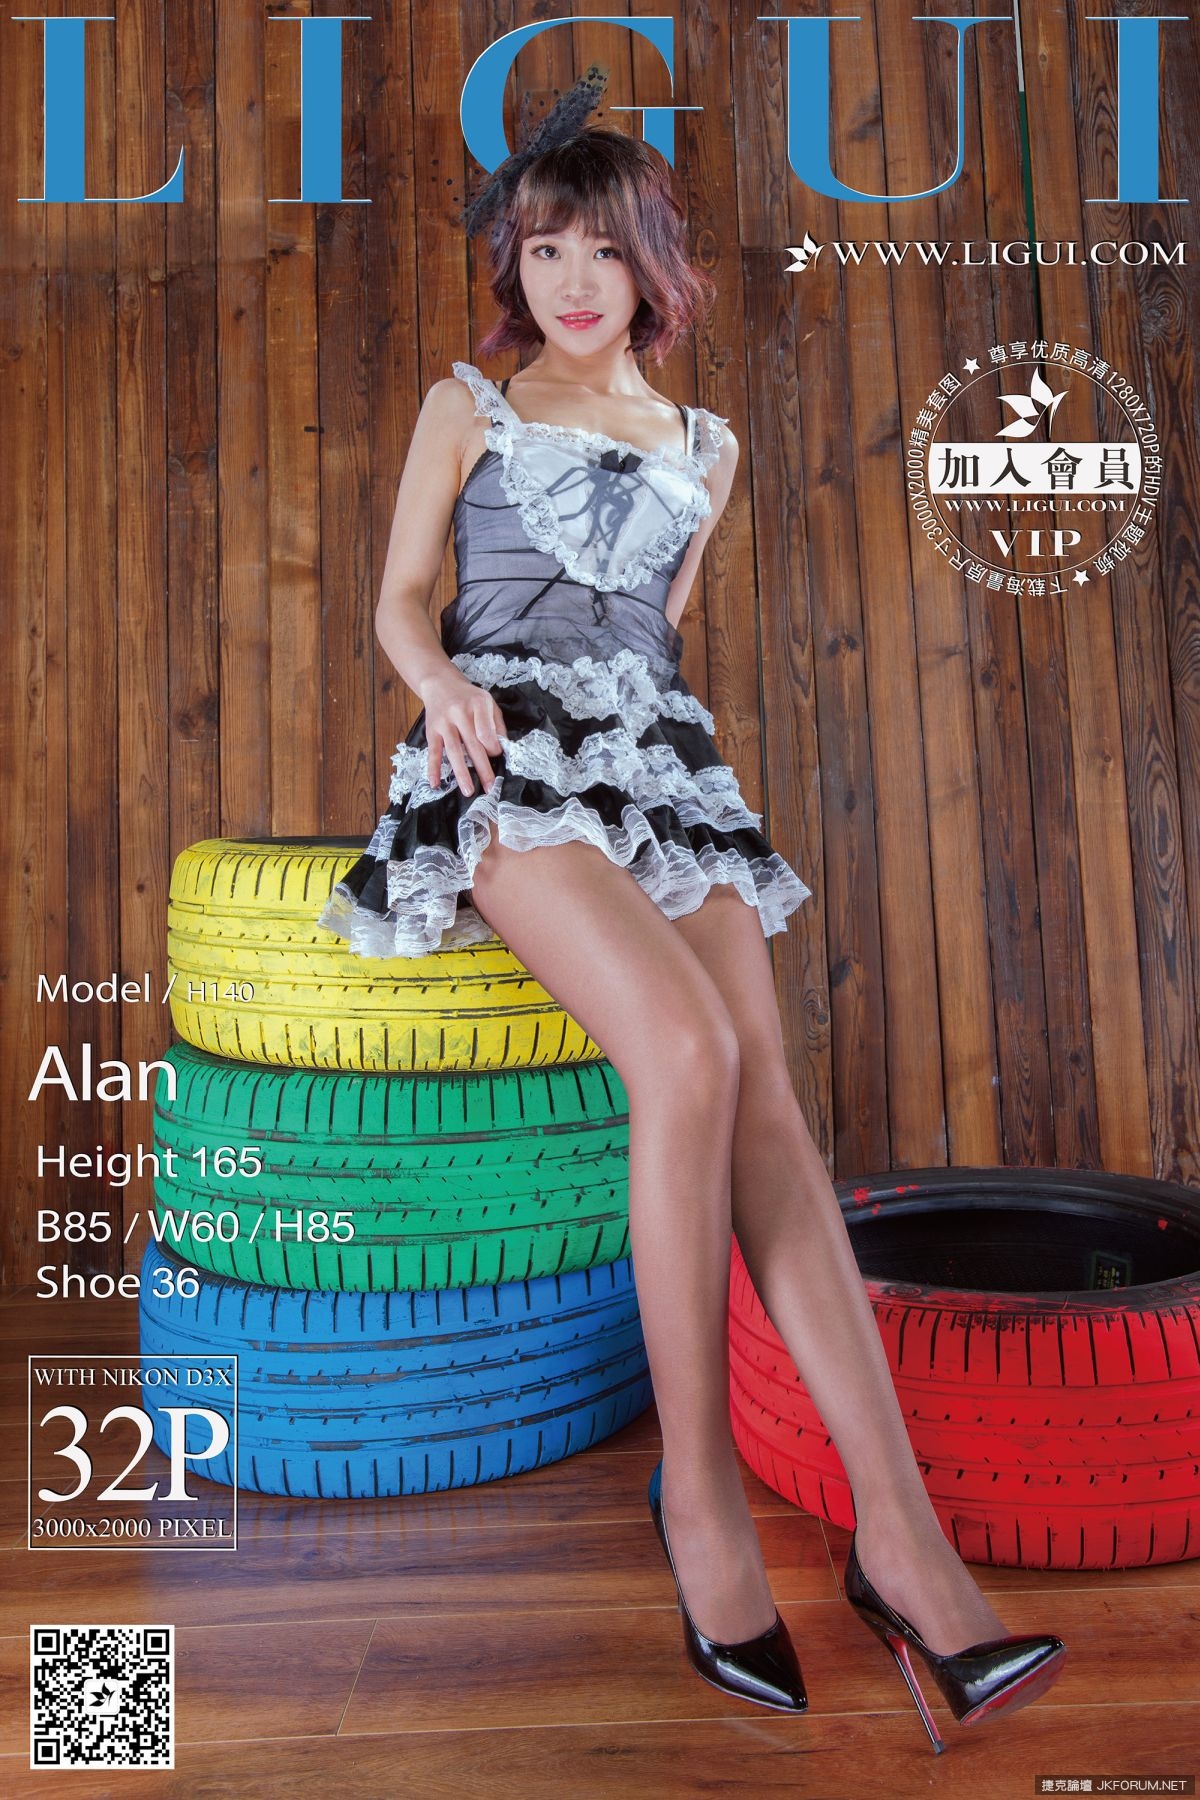 【麗櫃網路麗人系列】2016.05.03 Model ALAN 的黑絲高跟美腿【33P】 - 貼圖 - 絲襪美腿 -